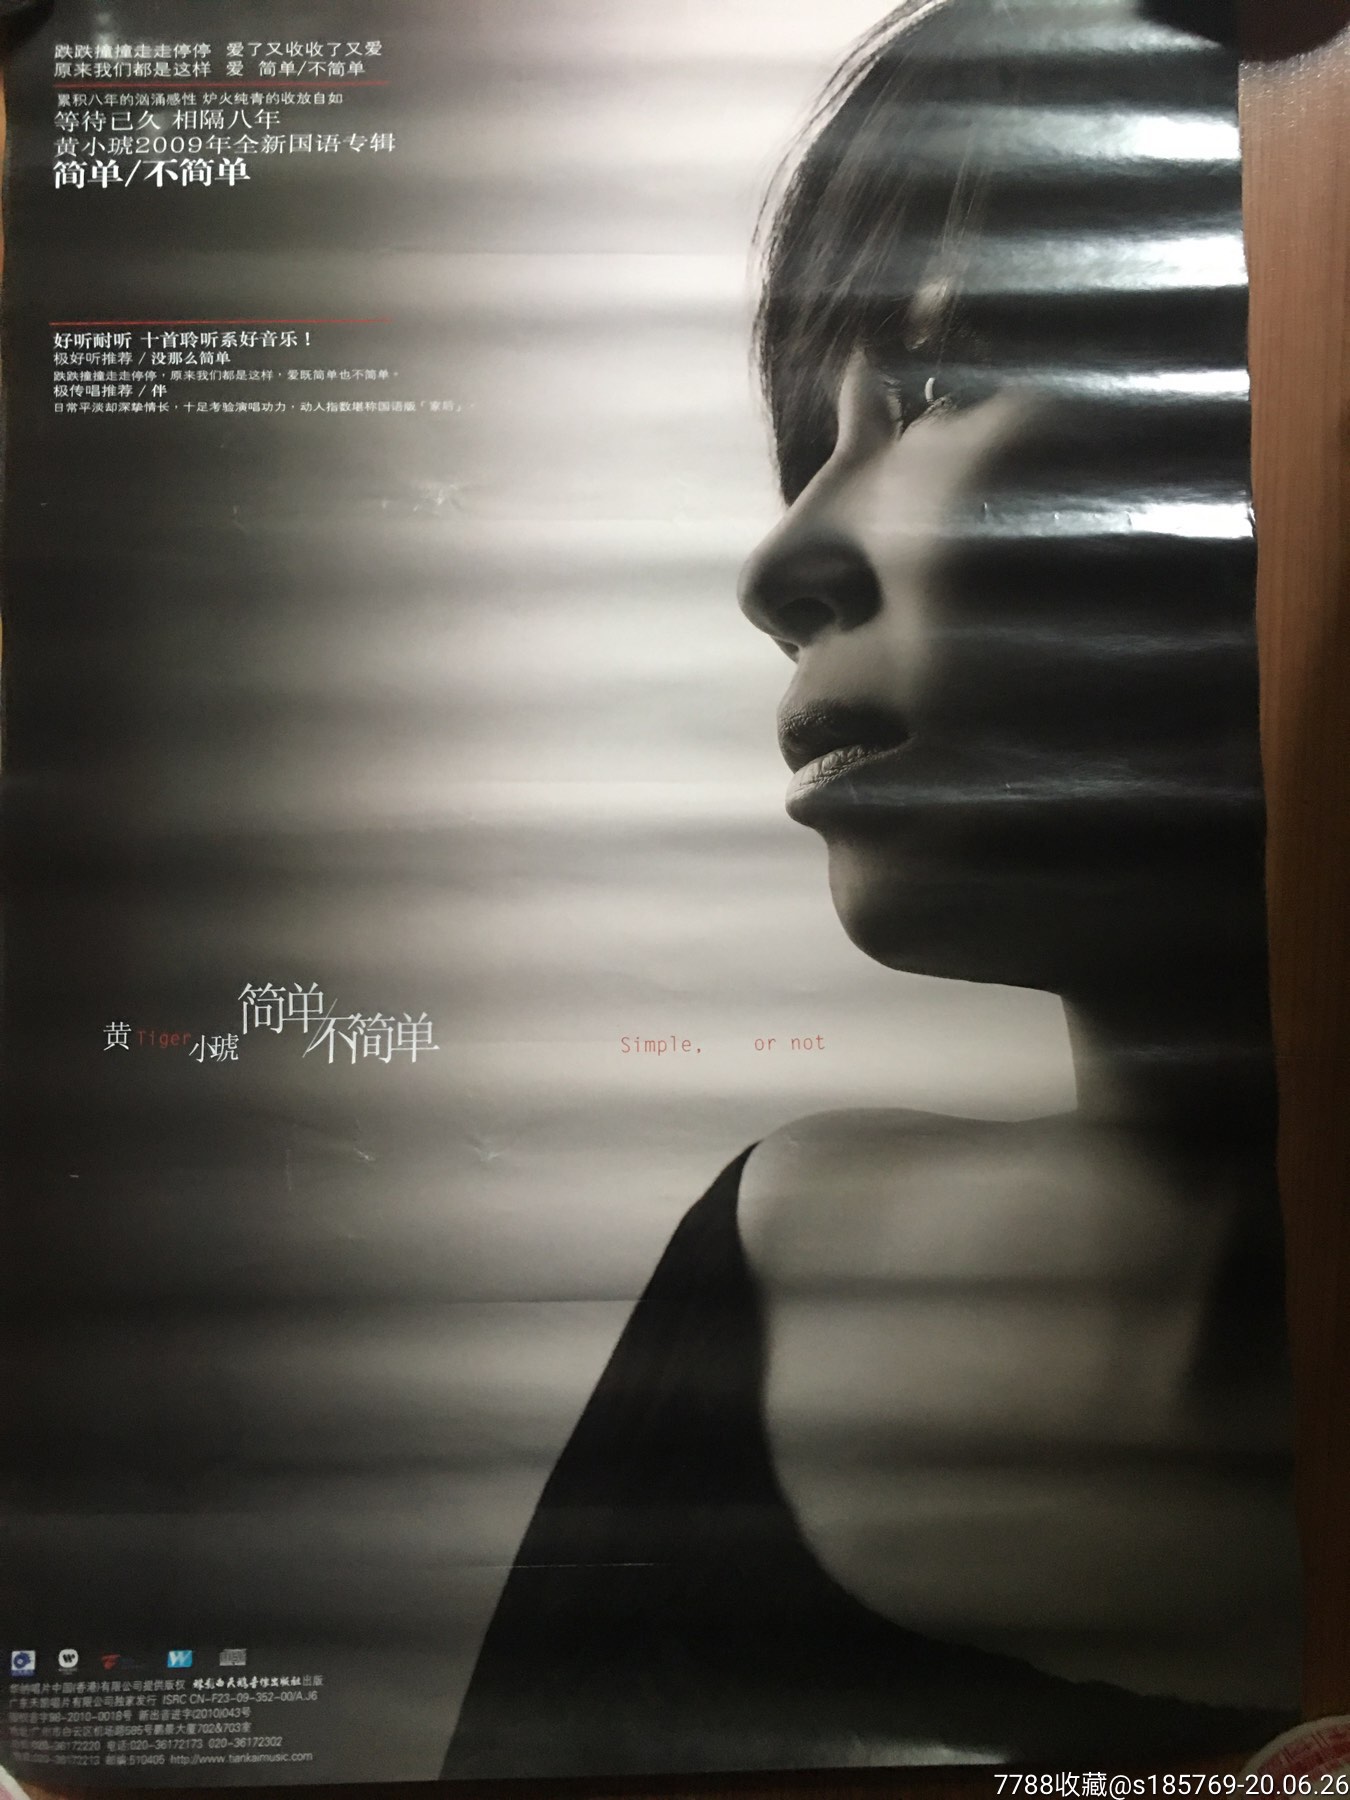 黄小琥(简单不简单)专辑宣传海报